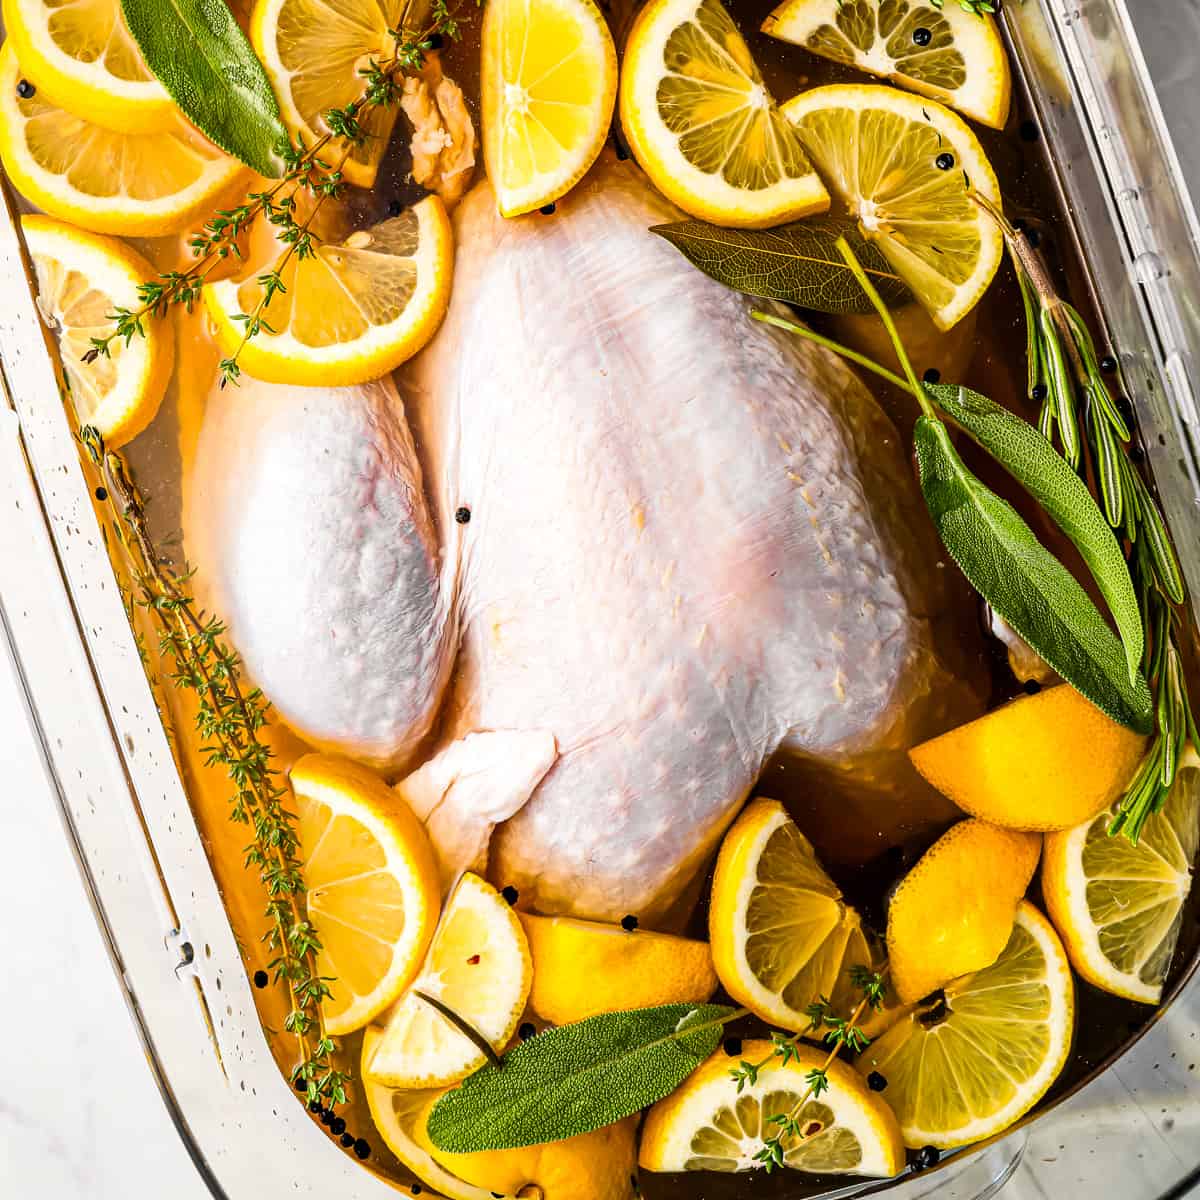 Best Turkey Brine Recipe - How to Make Turkey Brine